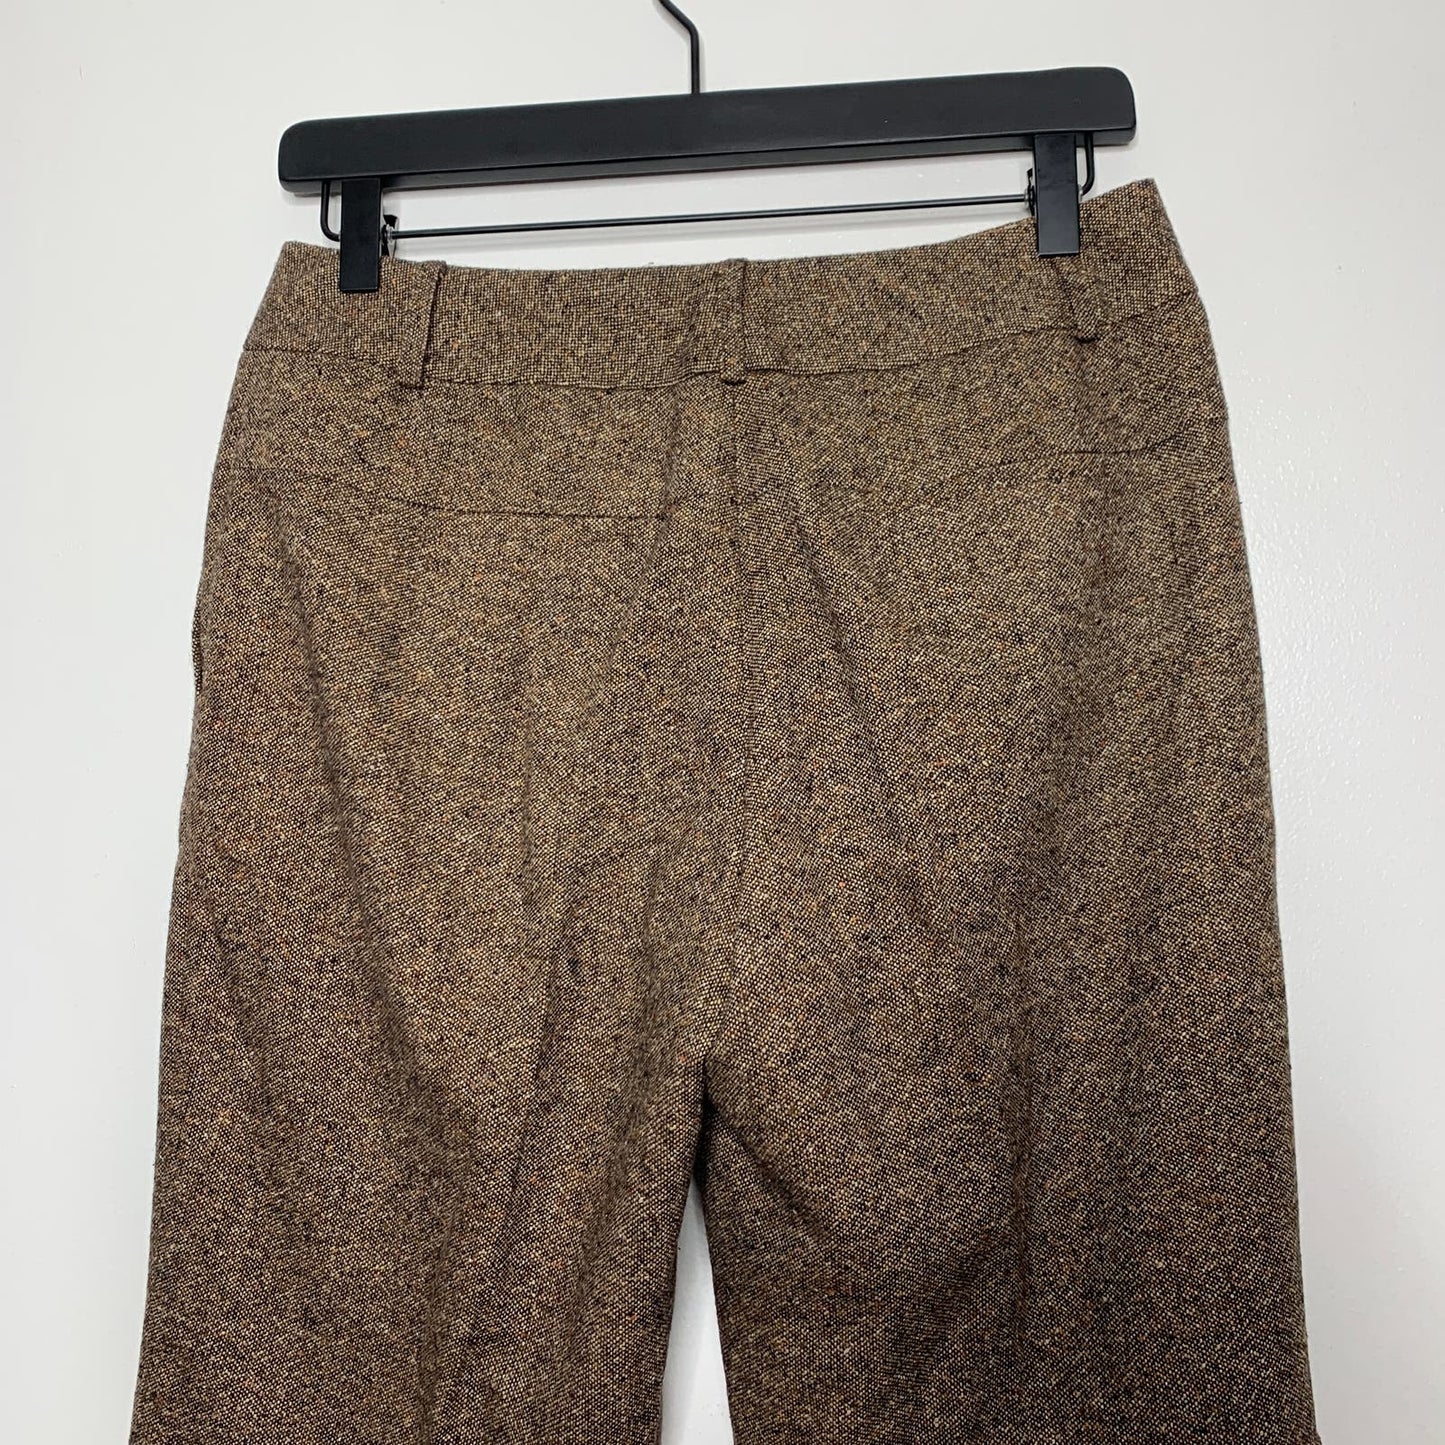 VINTAGE 90s brown tweed wool silk blend trouser pants SZ 4